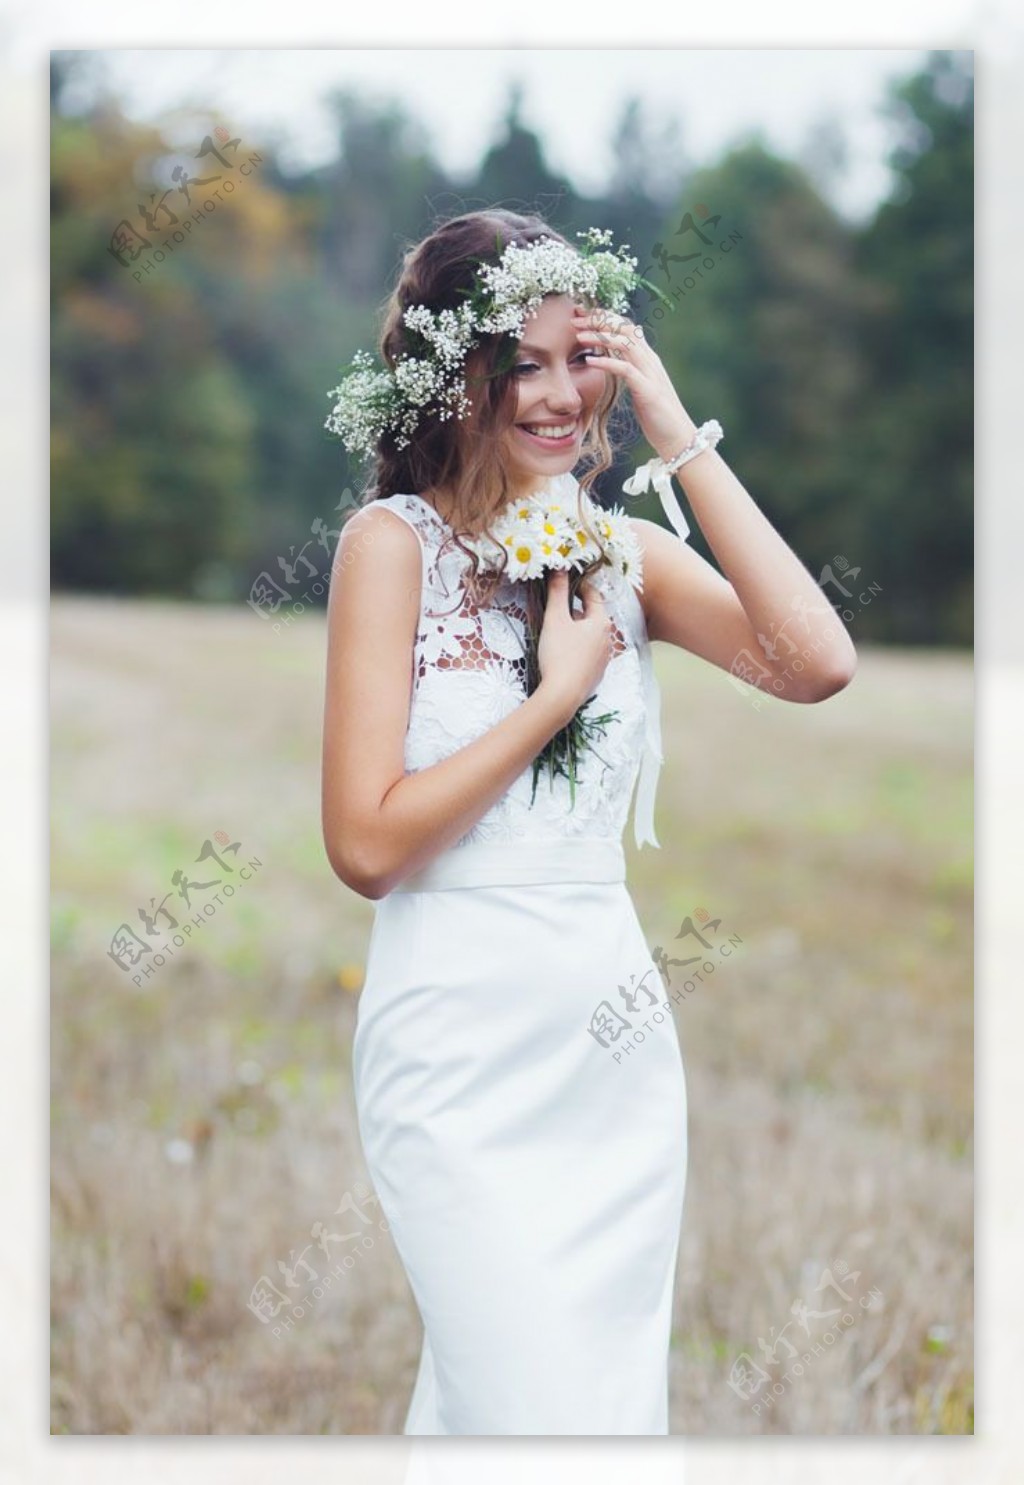 捧着花开心笑的新娘图片